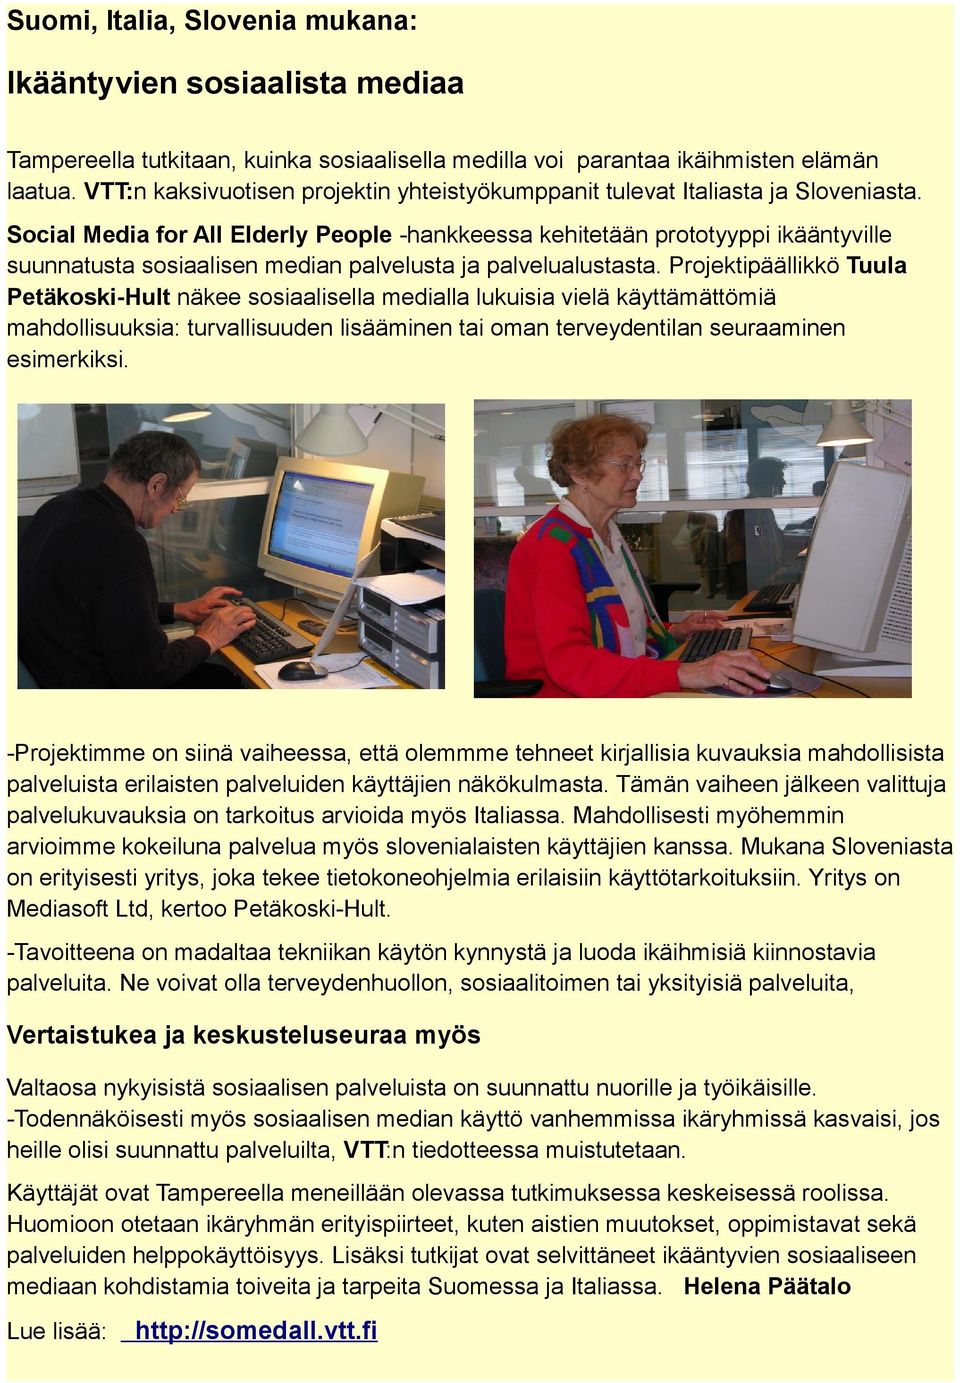 Social Media for All Elderly People -hankkeessa kehitetään prototyyppi ikääntyville suunnatusta sosiaalisen median palvelusta ja palvelualustasta.